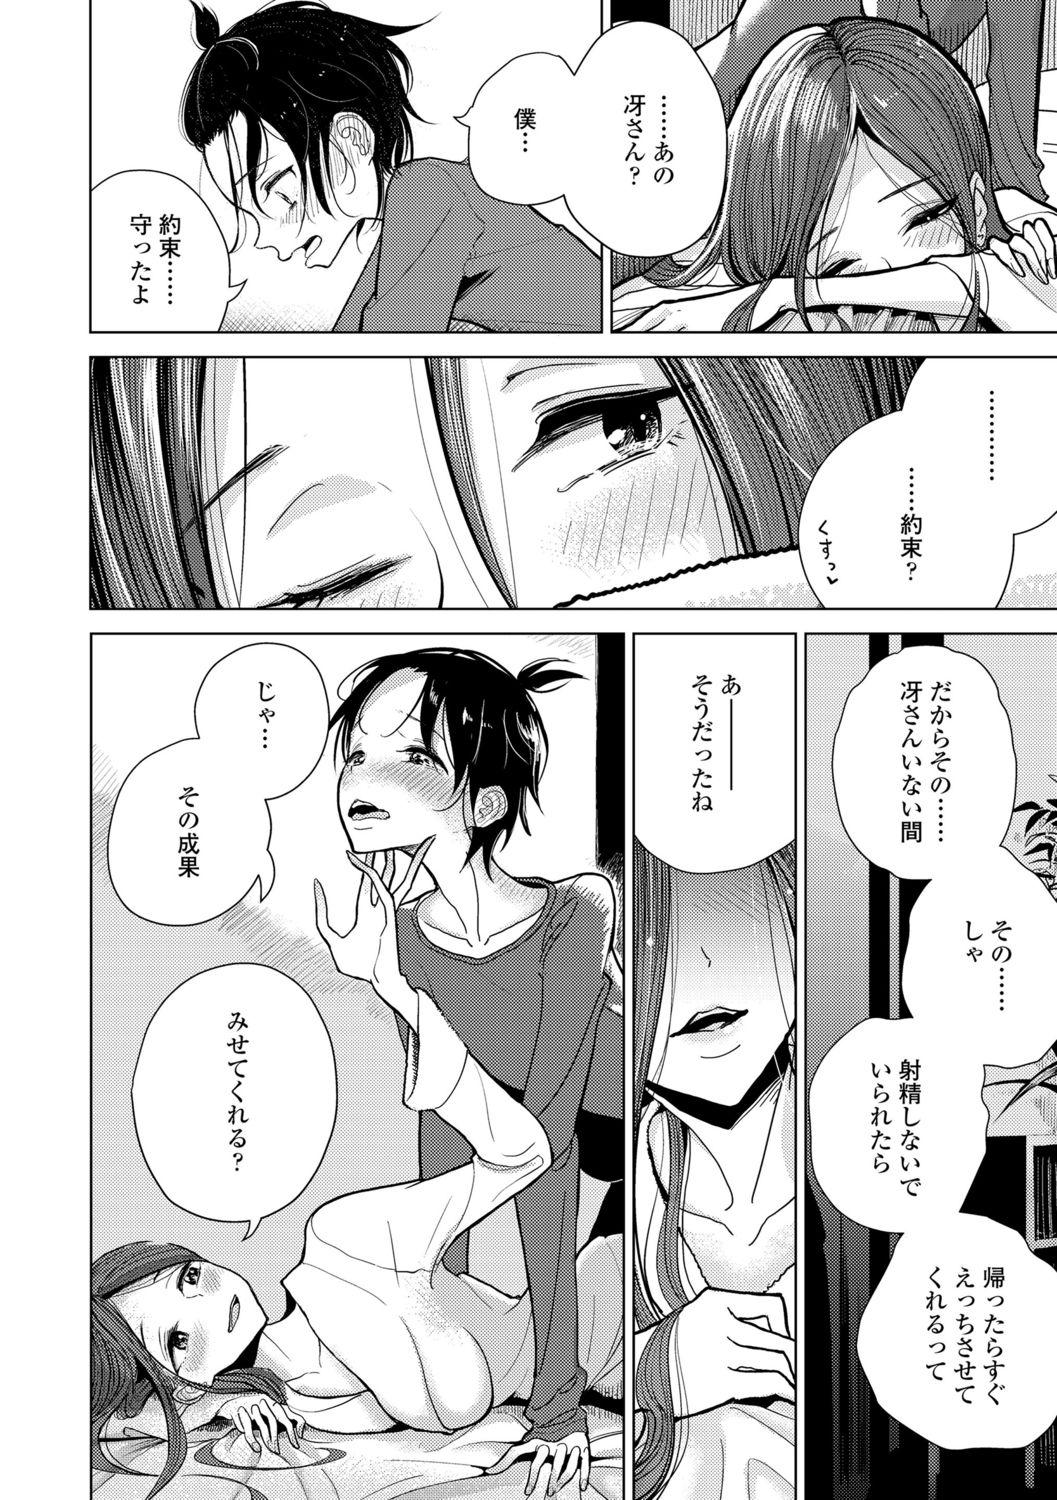 Nasty Anata ga Toroke Ochiru made Gay Boyporn - Page 6